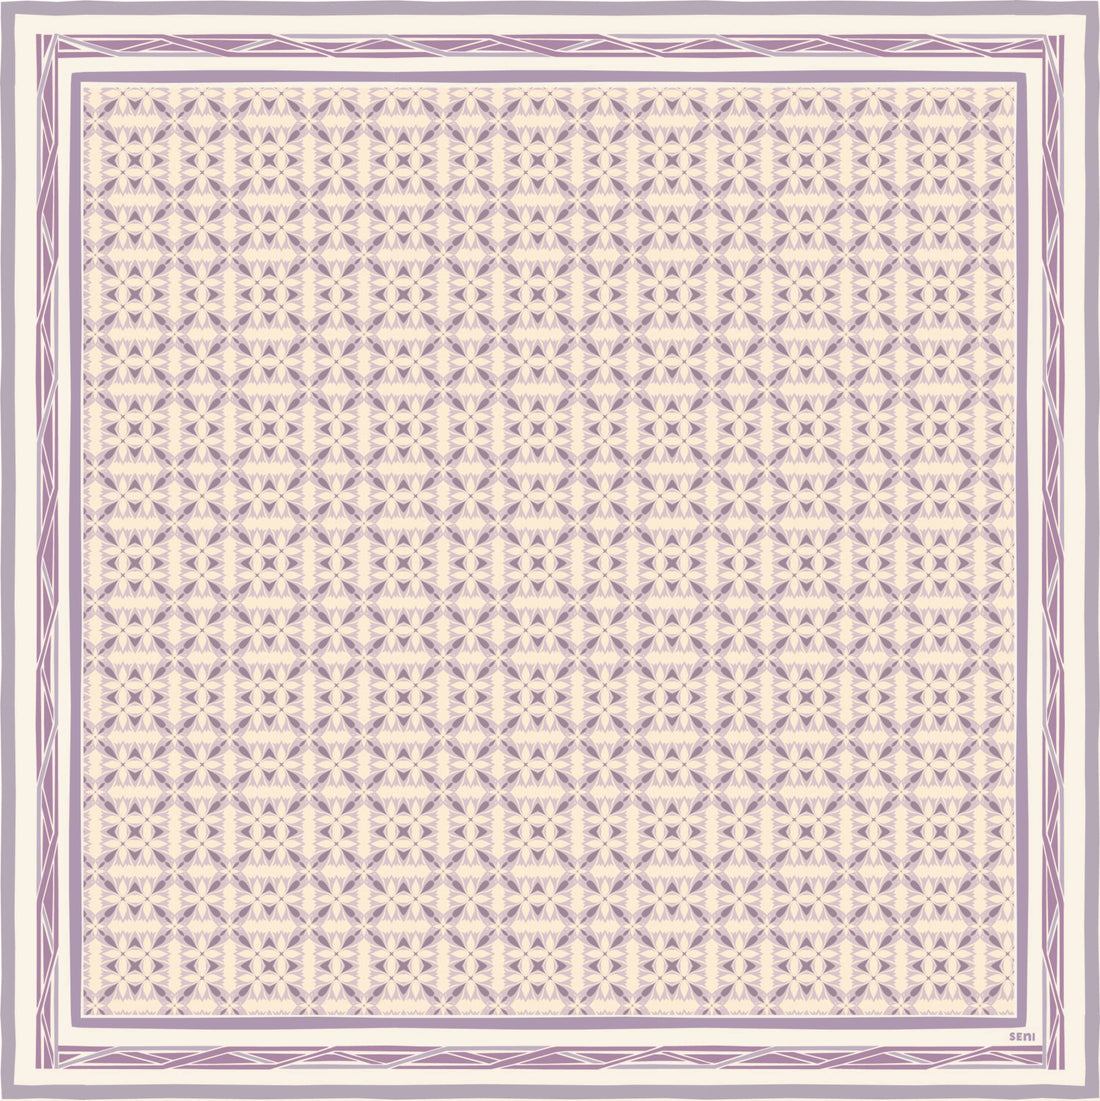 Grace Monogram Scarf in Lavender